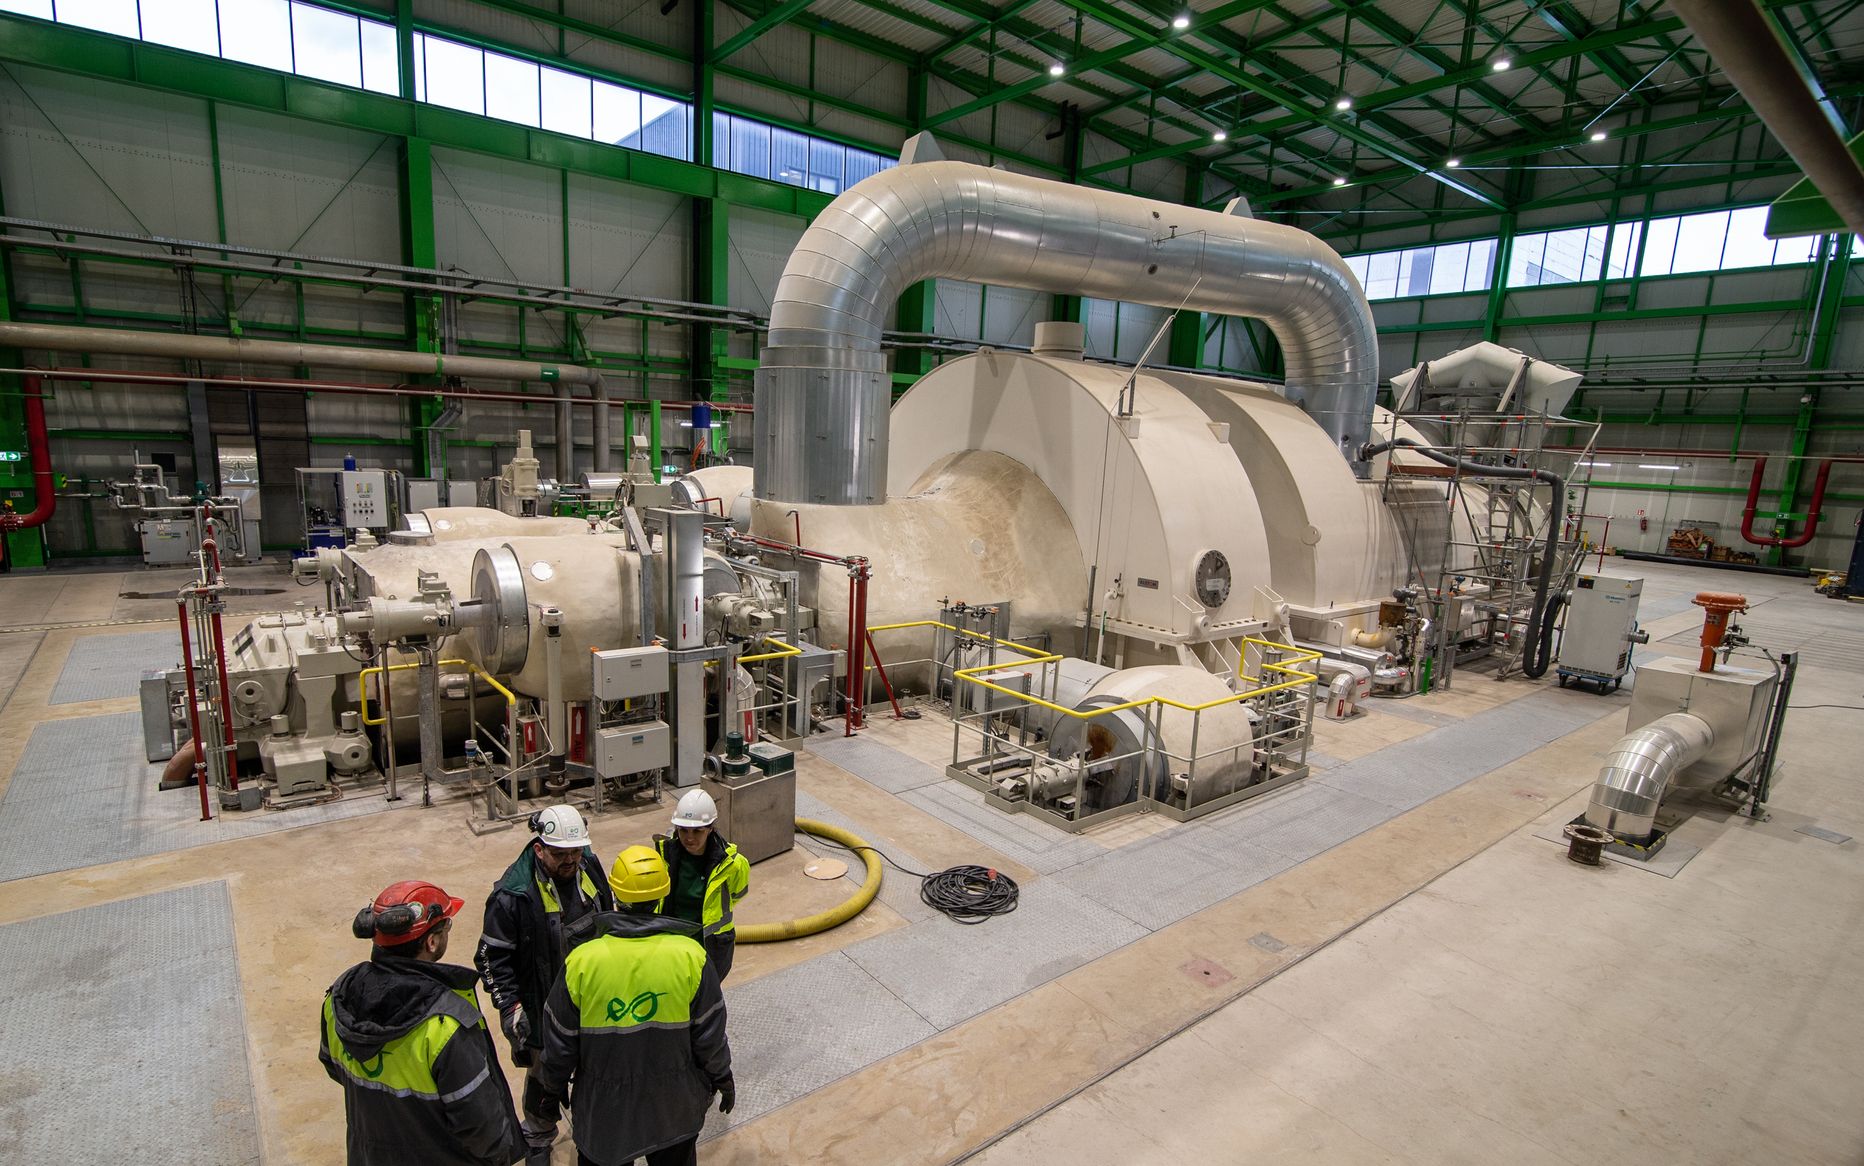 Sel aastal on Auvere jaama turbiin vahetpidamata pöörelnud ja elektrit tootnud.